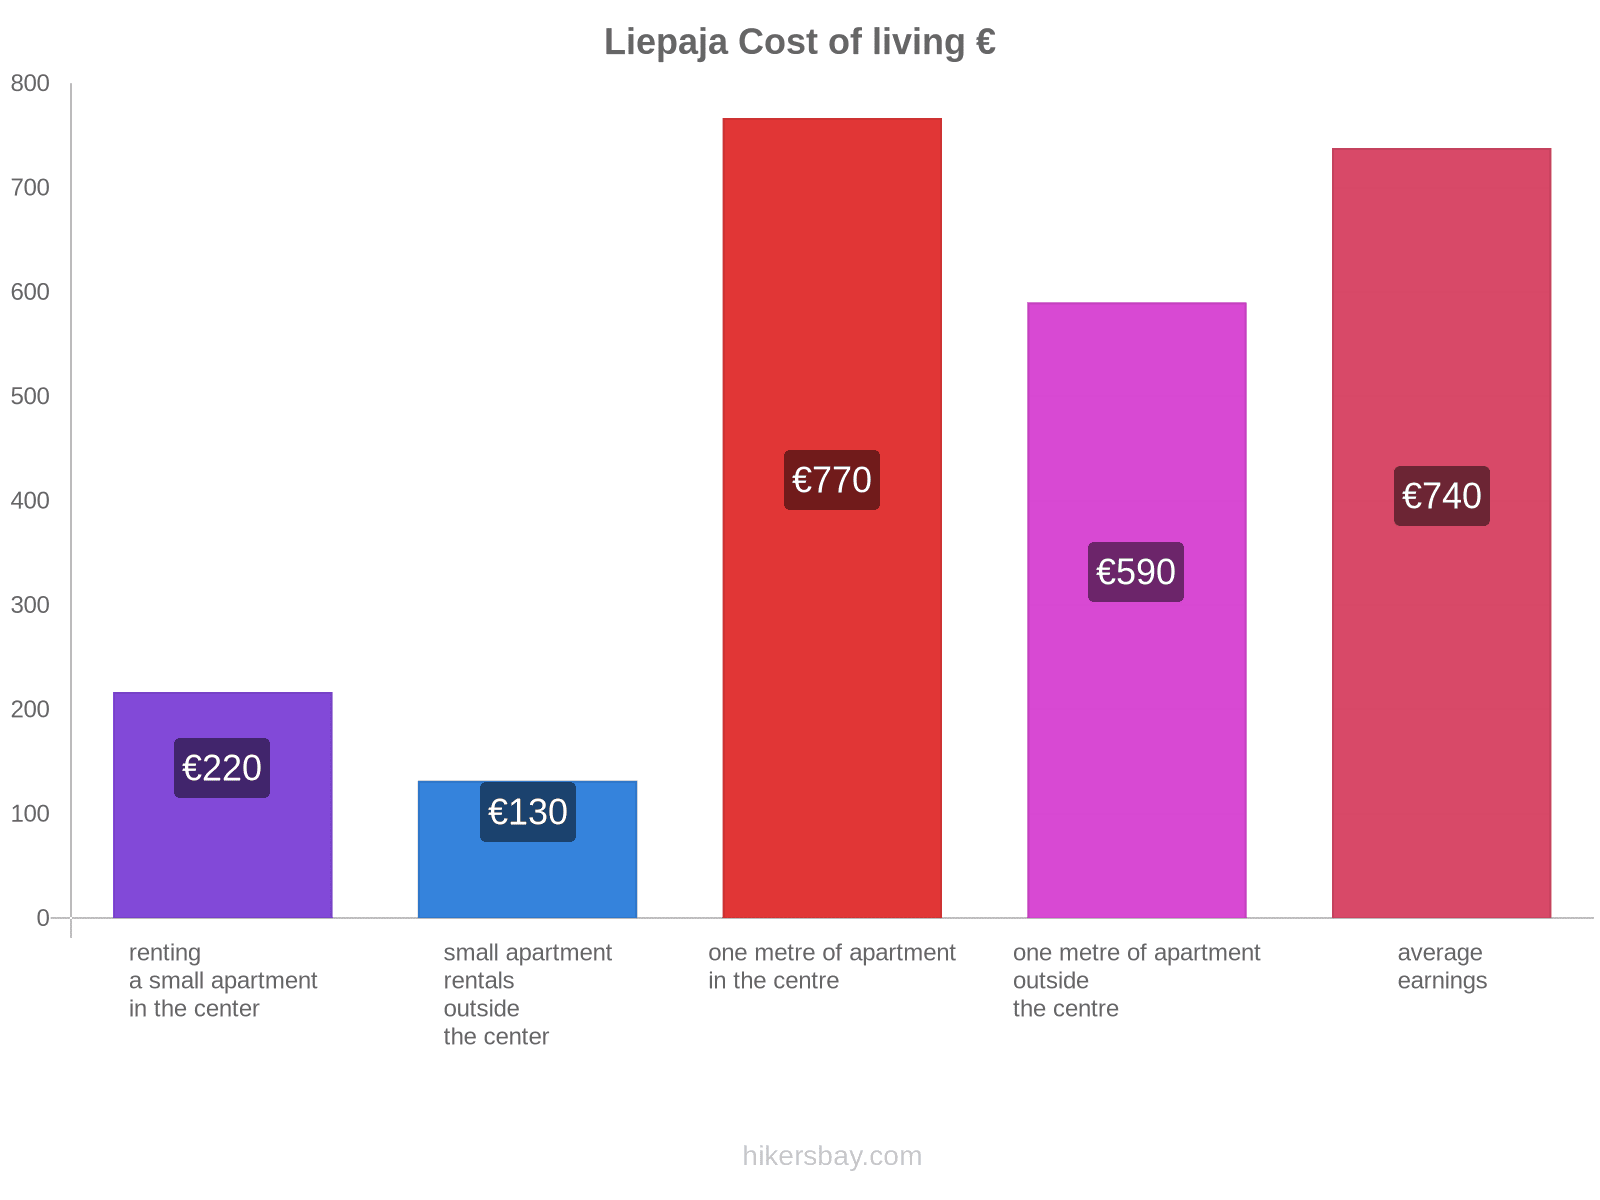 Liepaja cost of living hikersbay.com